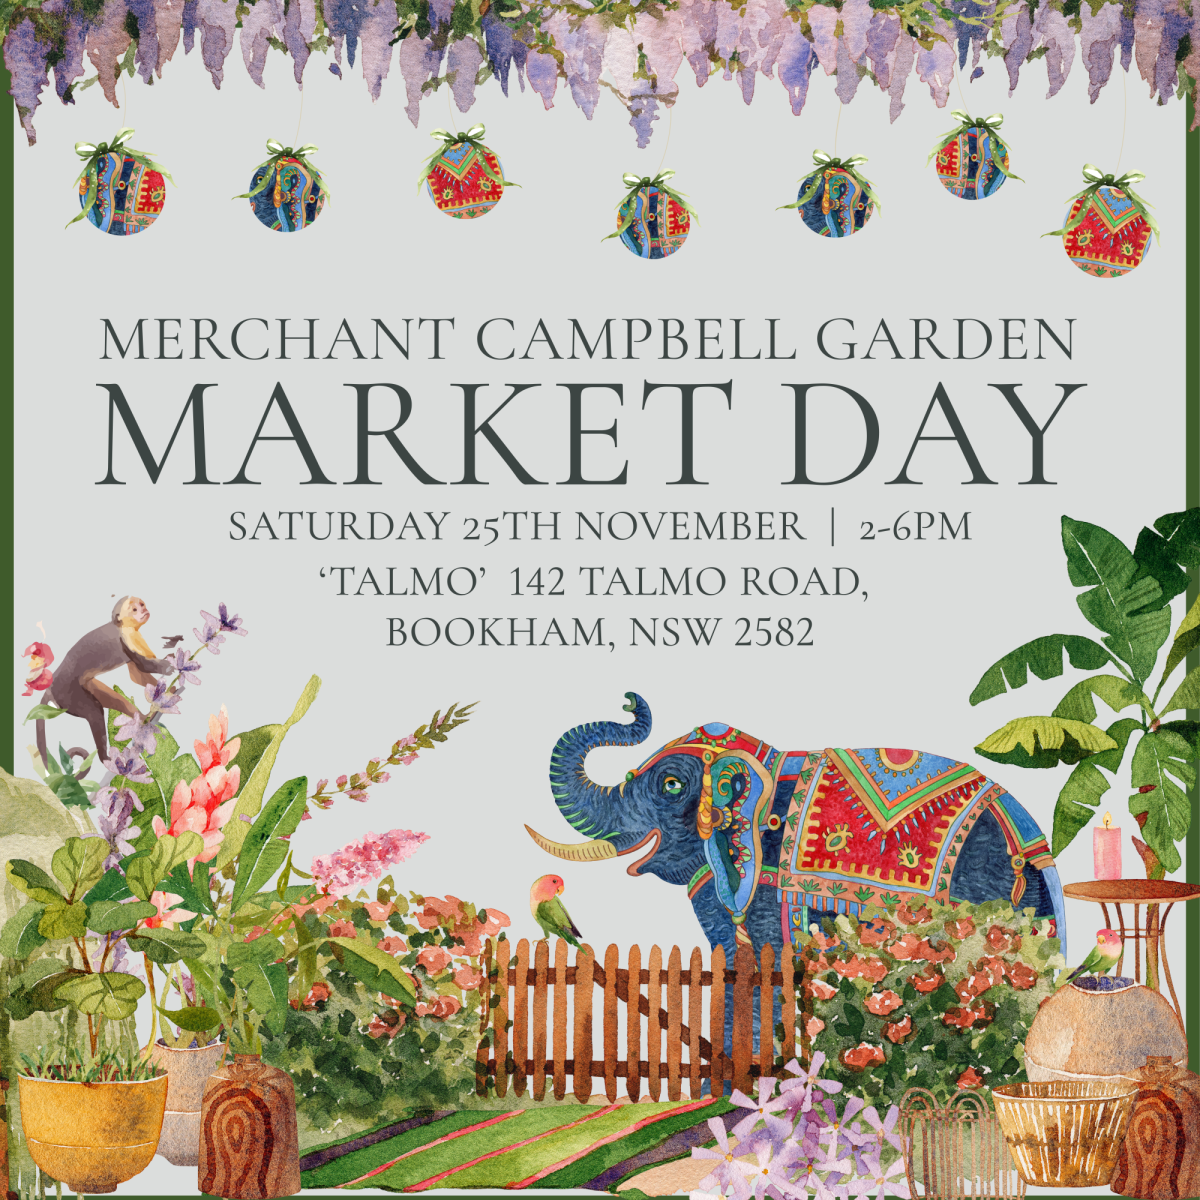 Merchant Campbell Garden Market Day event poster